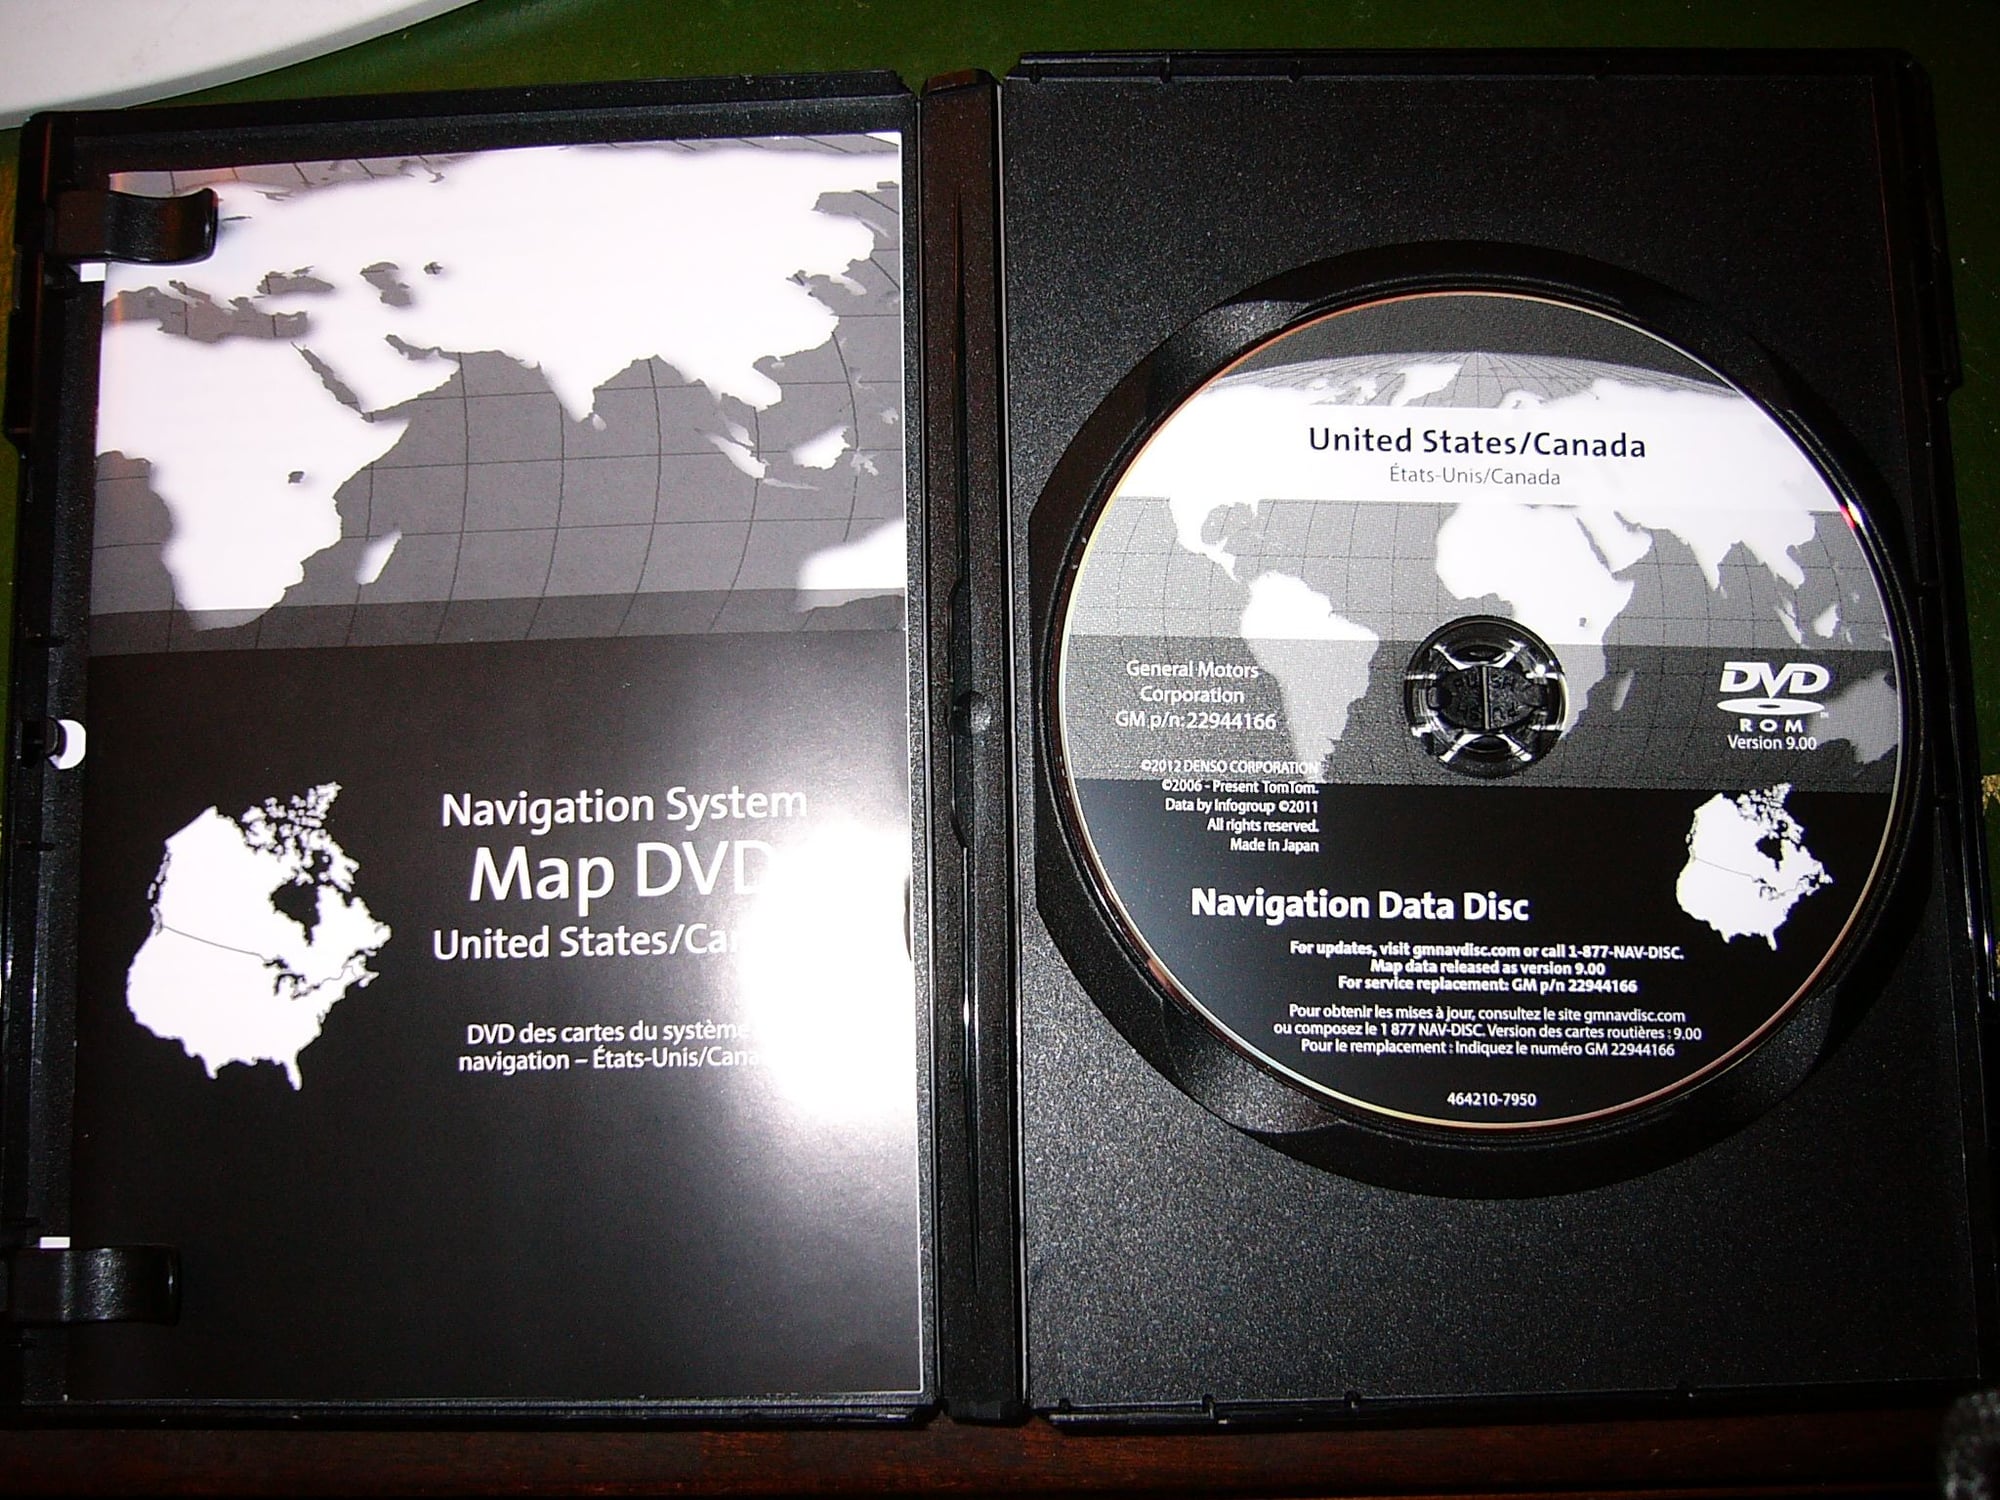 Gm navigation disc middle east